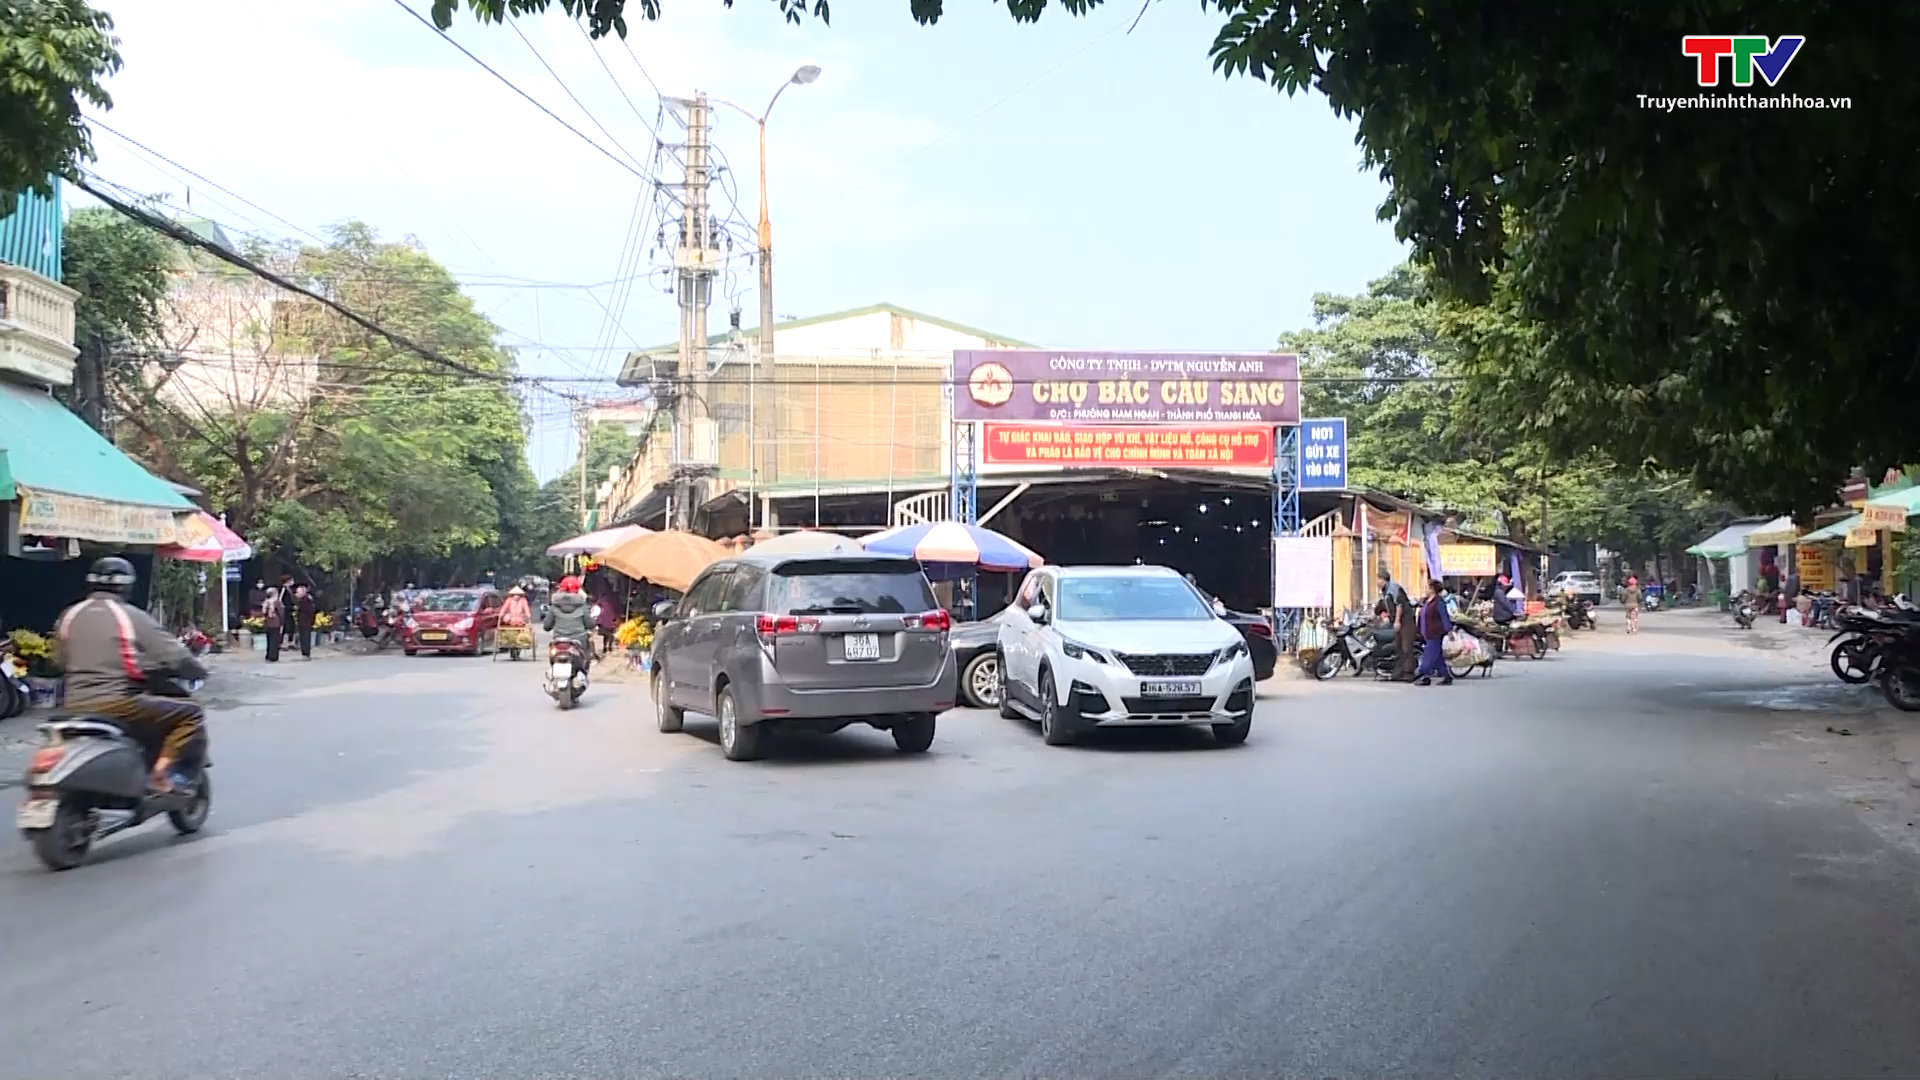 Khó khăn trong xóa bỏ chợ cóc, chợ tạm ở thành phố Thanh Hóa - Ảnh 3.